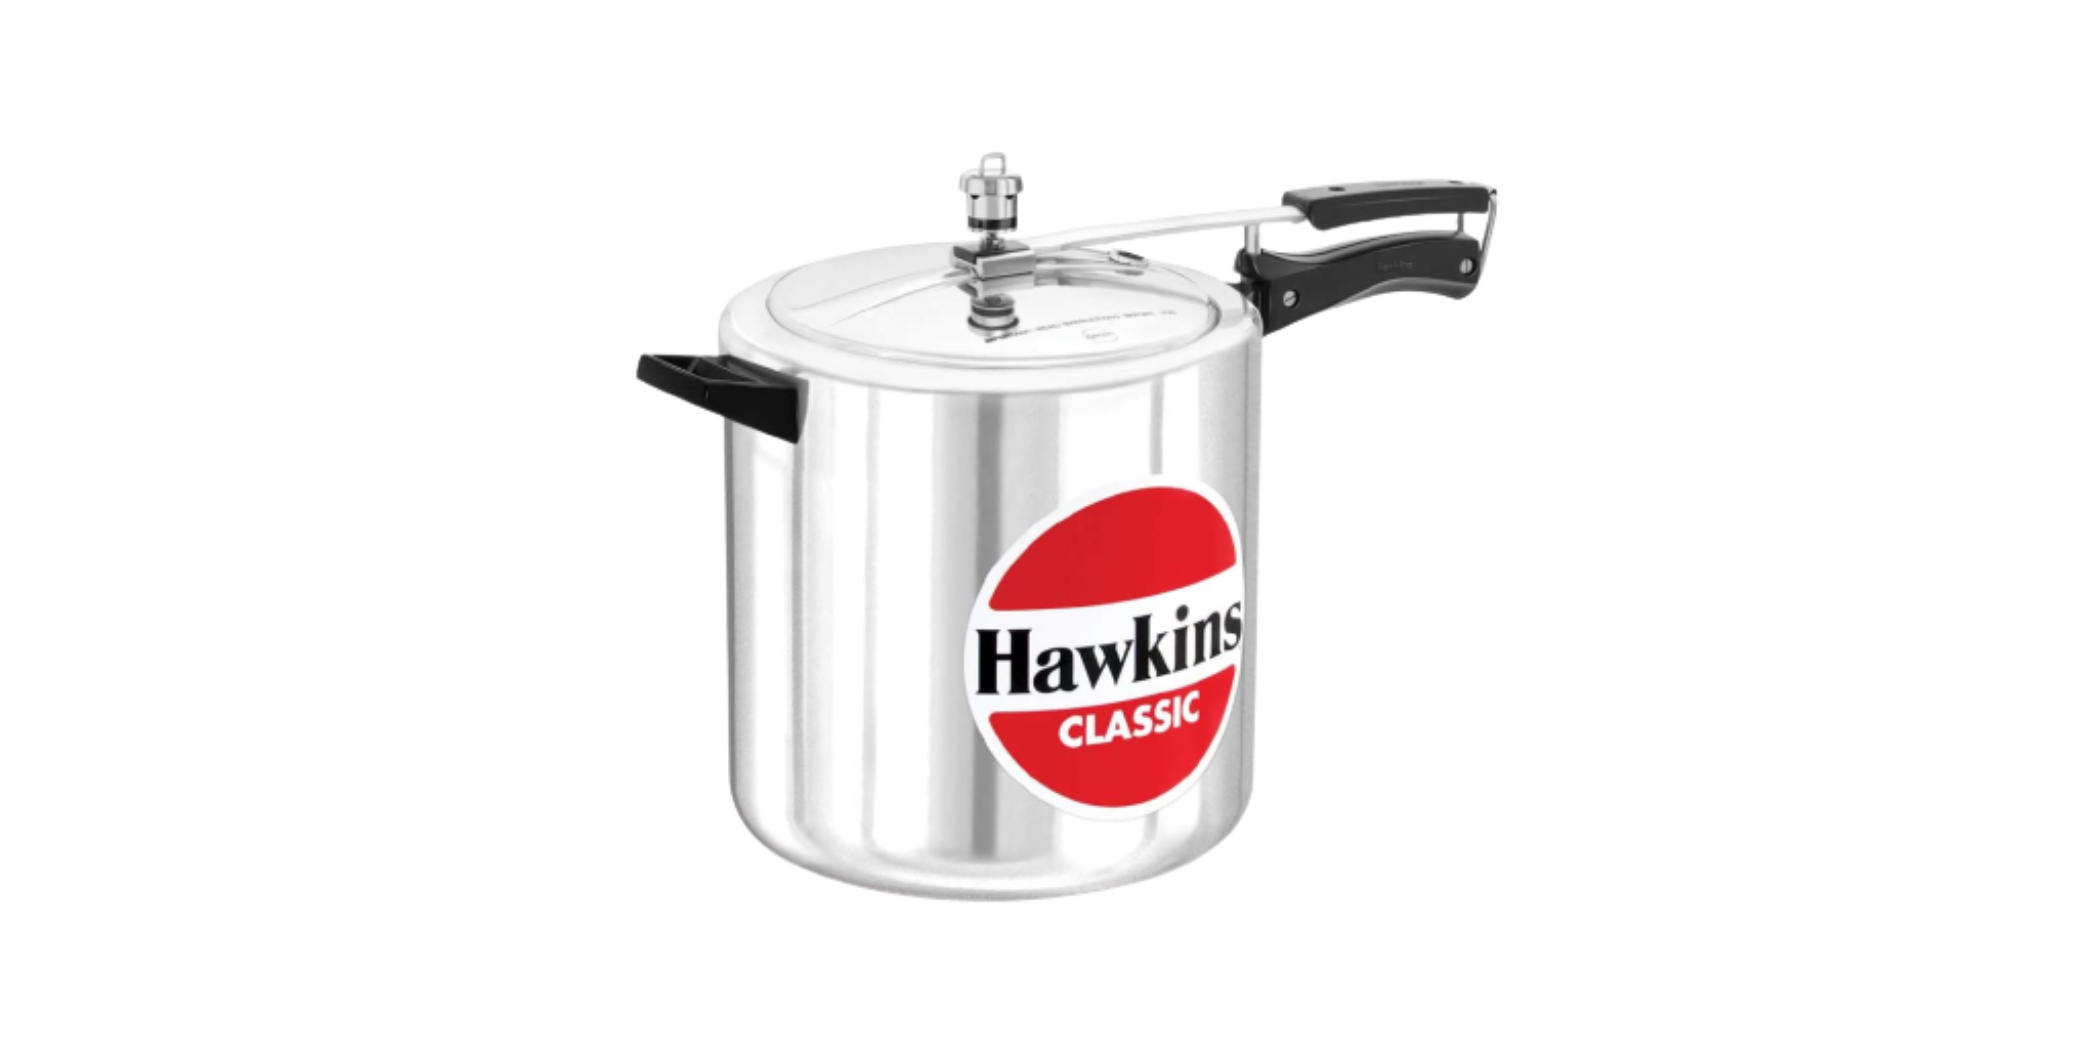 Hawkins CL12 12L Classic Pressure Cooker